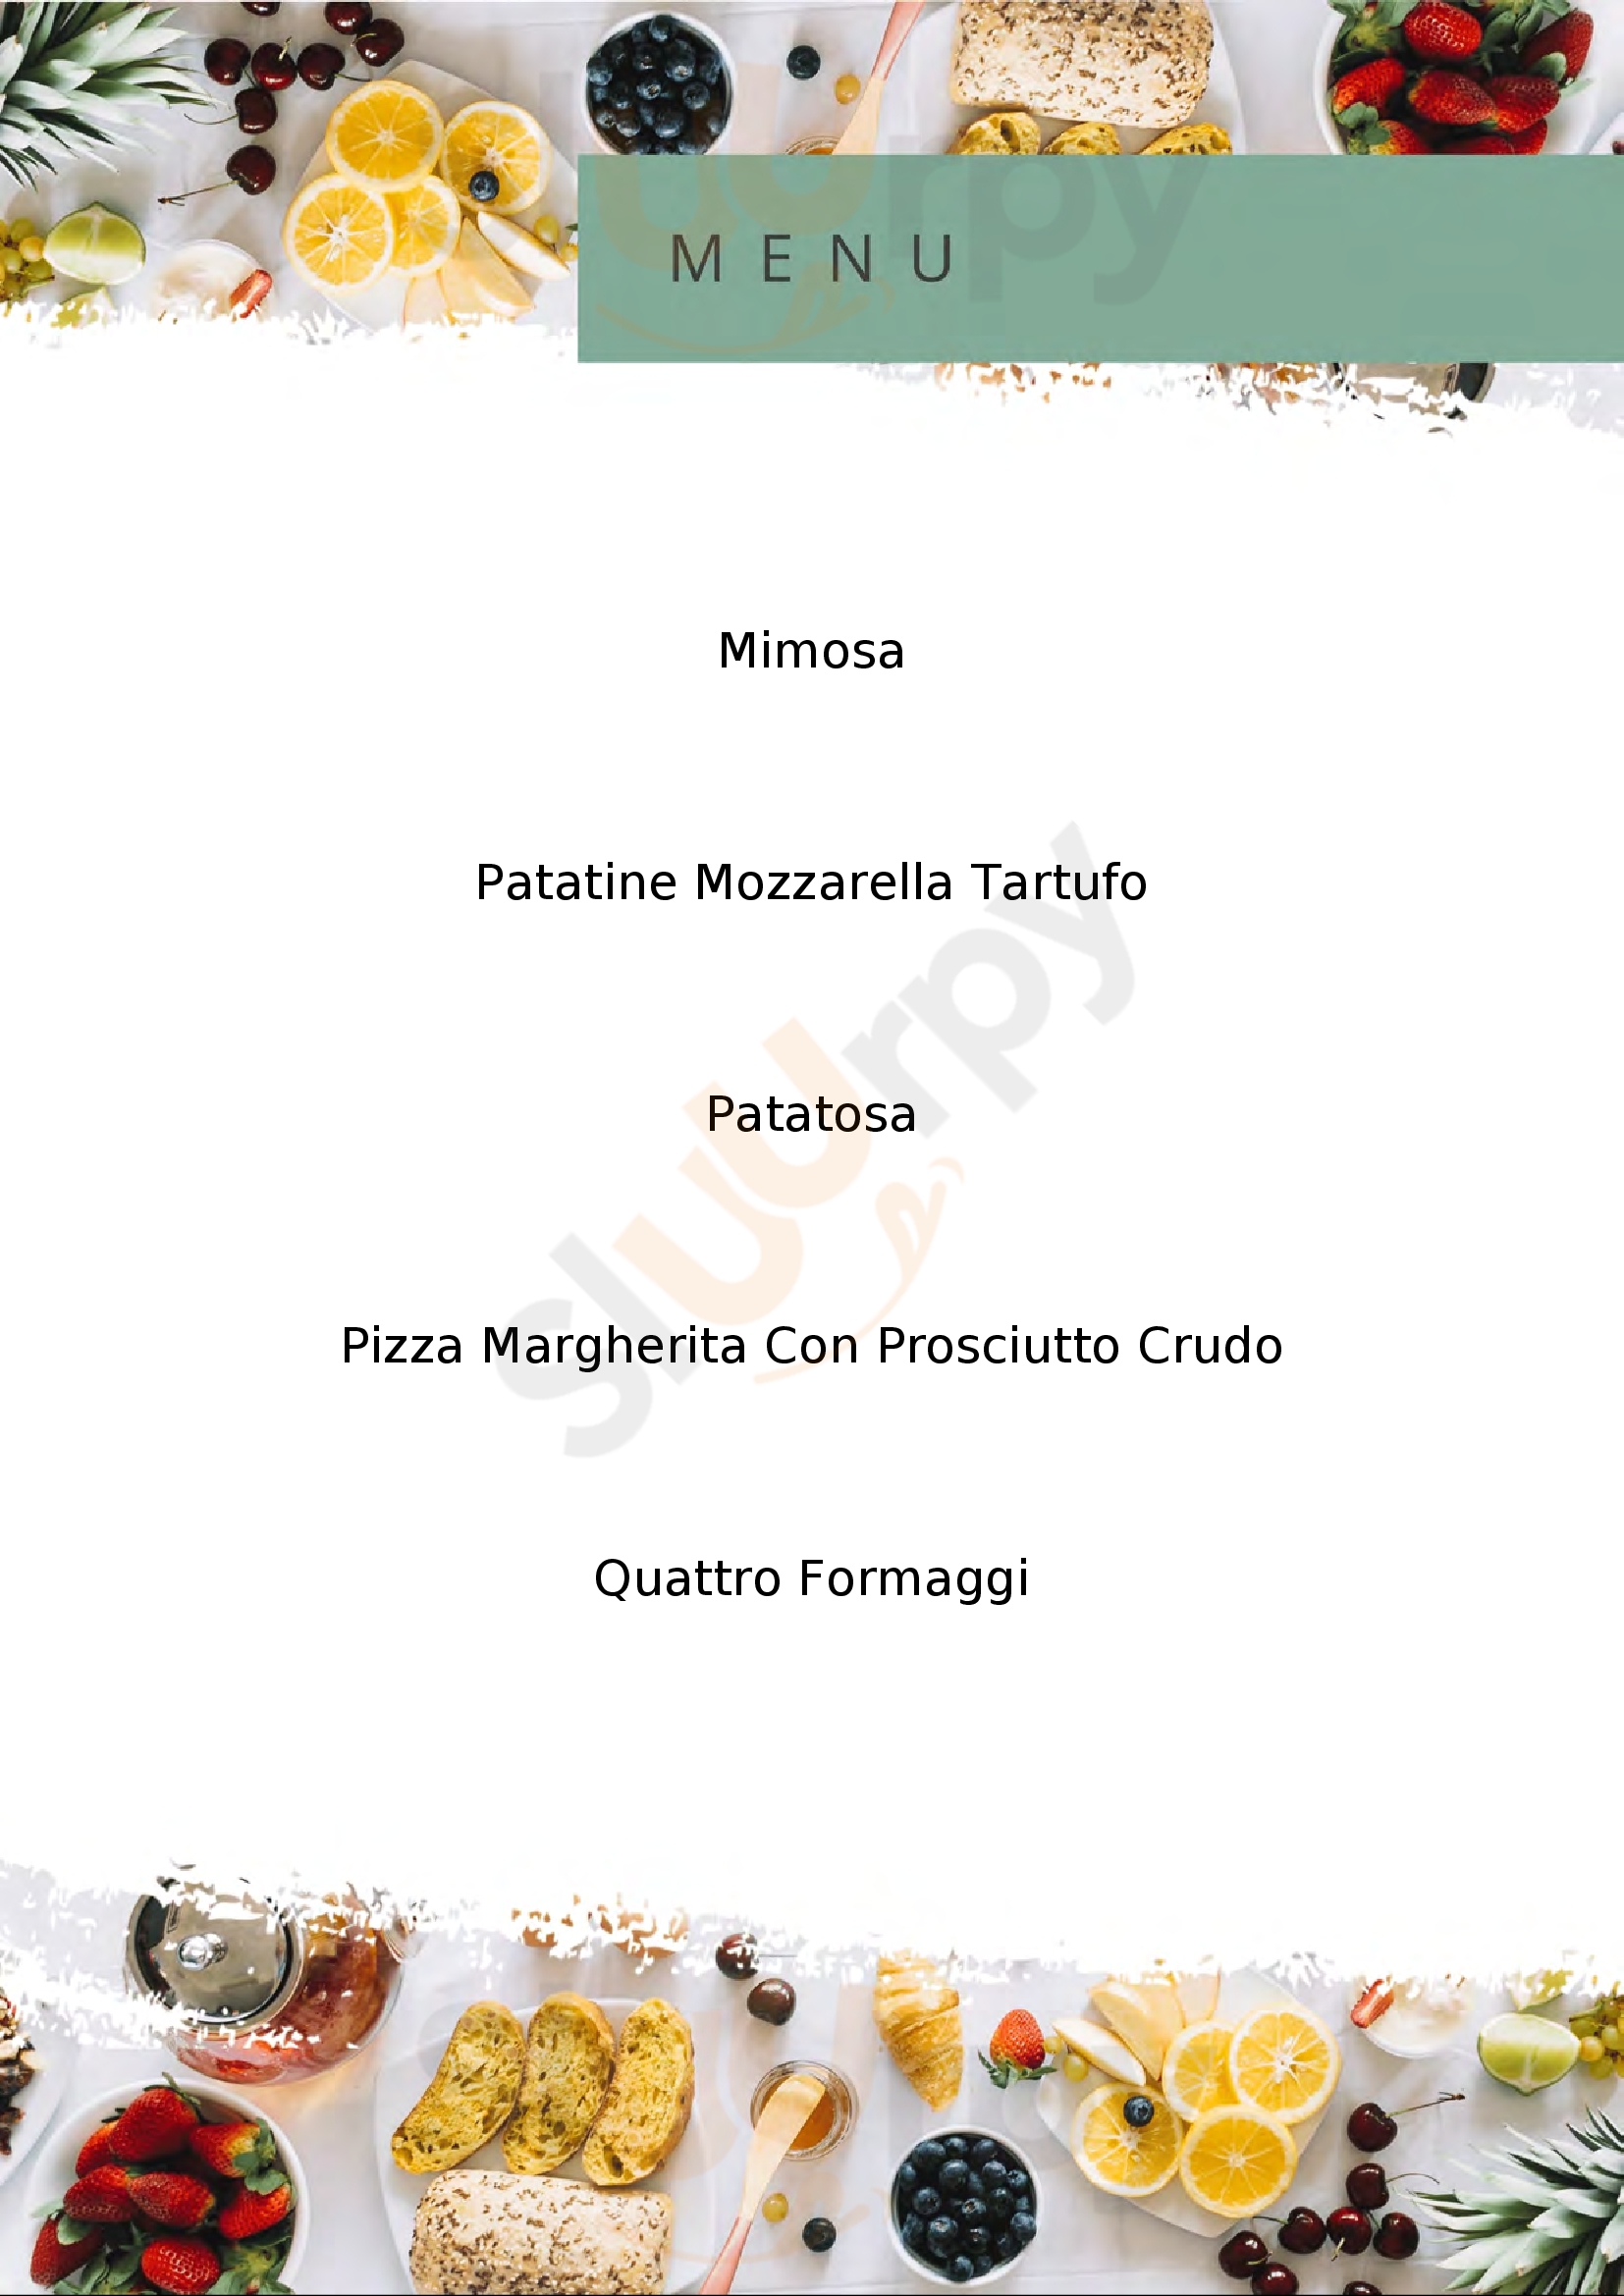 Quisipizza Foiano Della Chiana menù 1 pagina